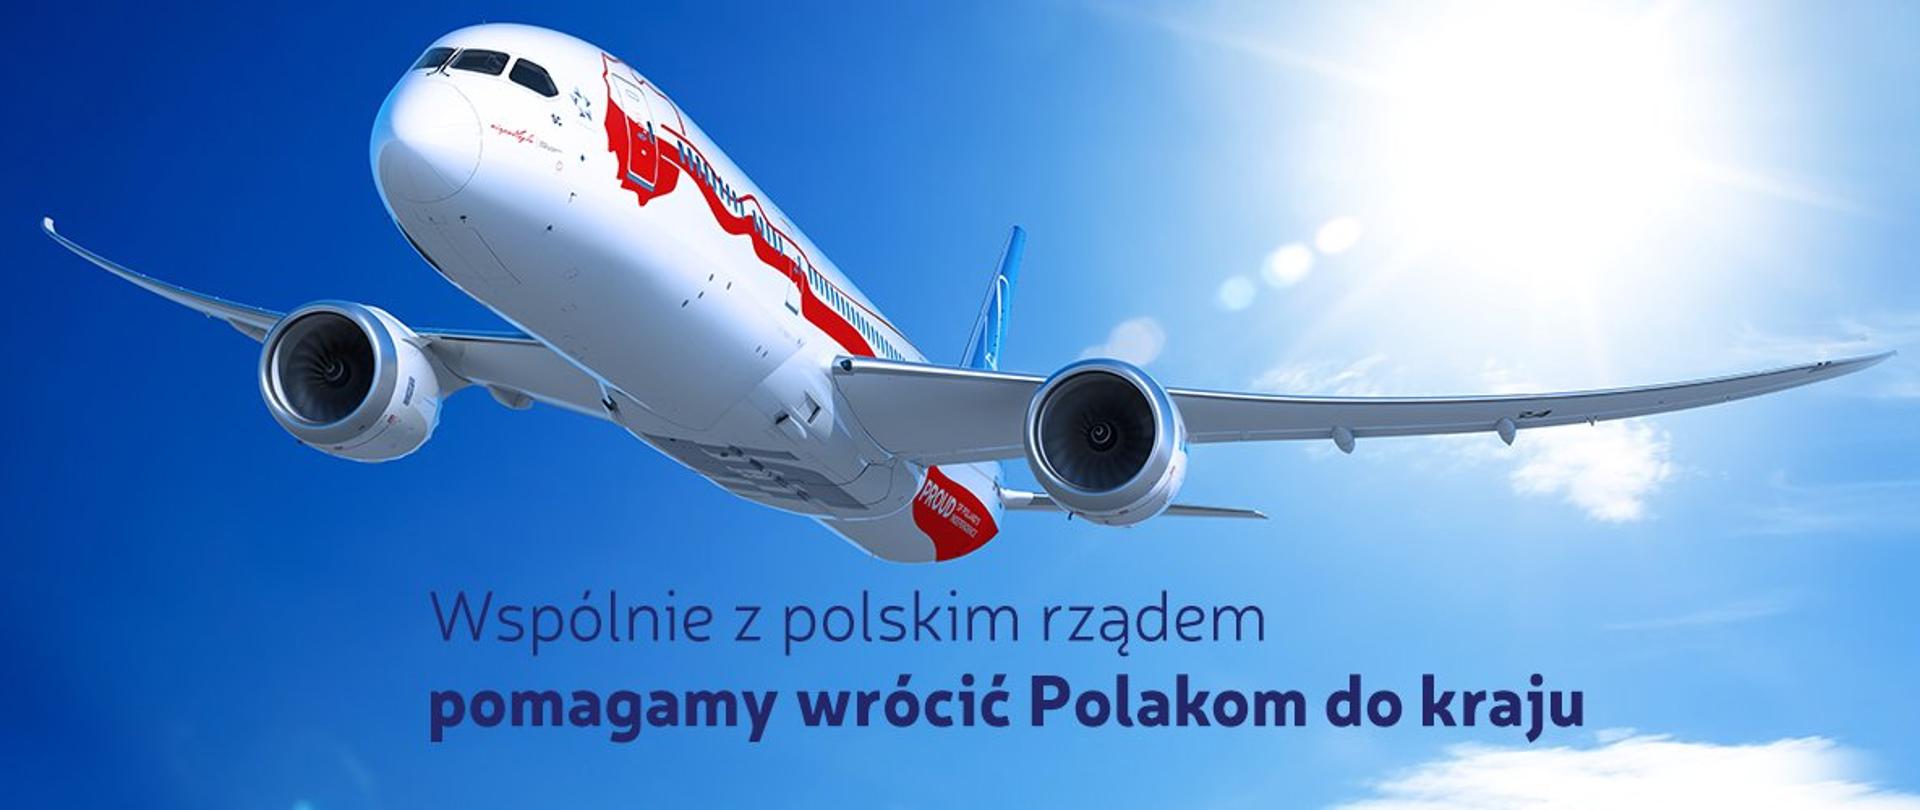 Na zdjęciu lecący samolot. Granatowy napis: Wspólnie z polskim rządem pomagamy wrócić Polakom do kraju